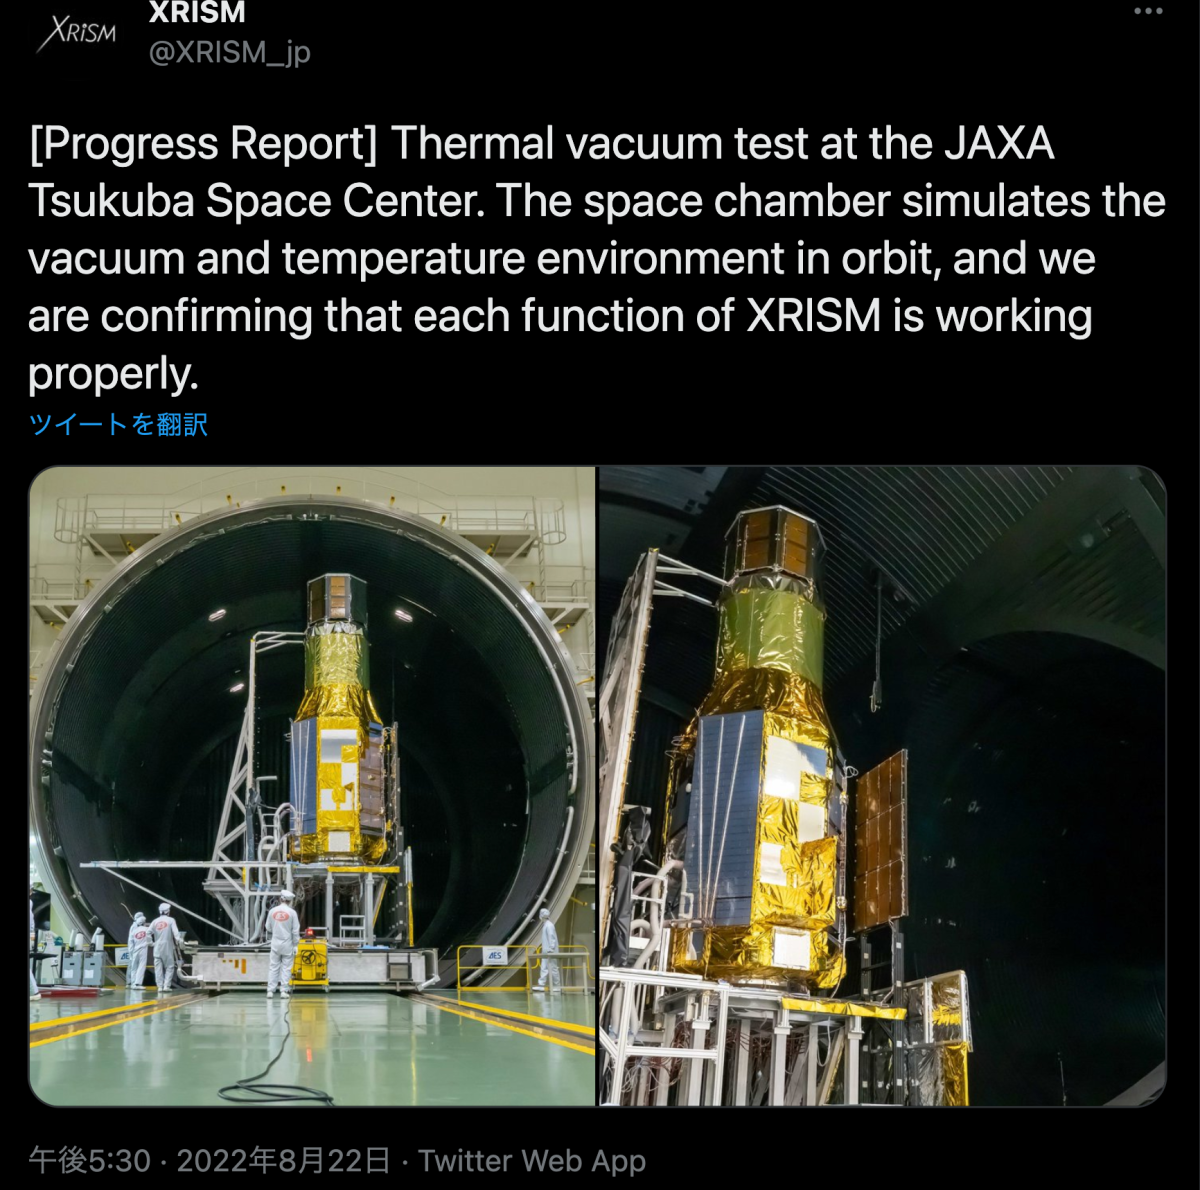 Thermal-vacuum test of XRISM spacecraft